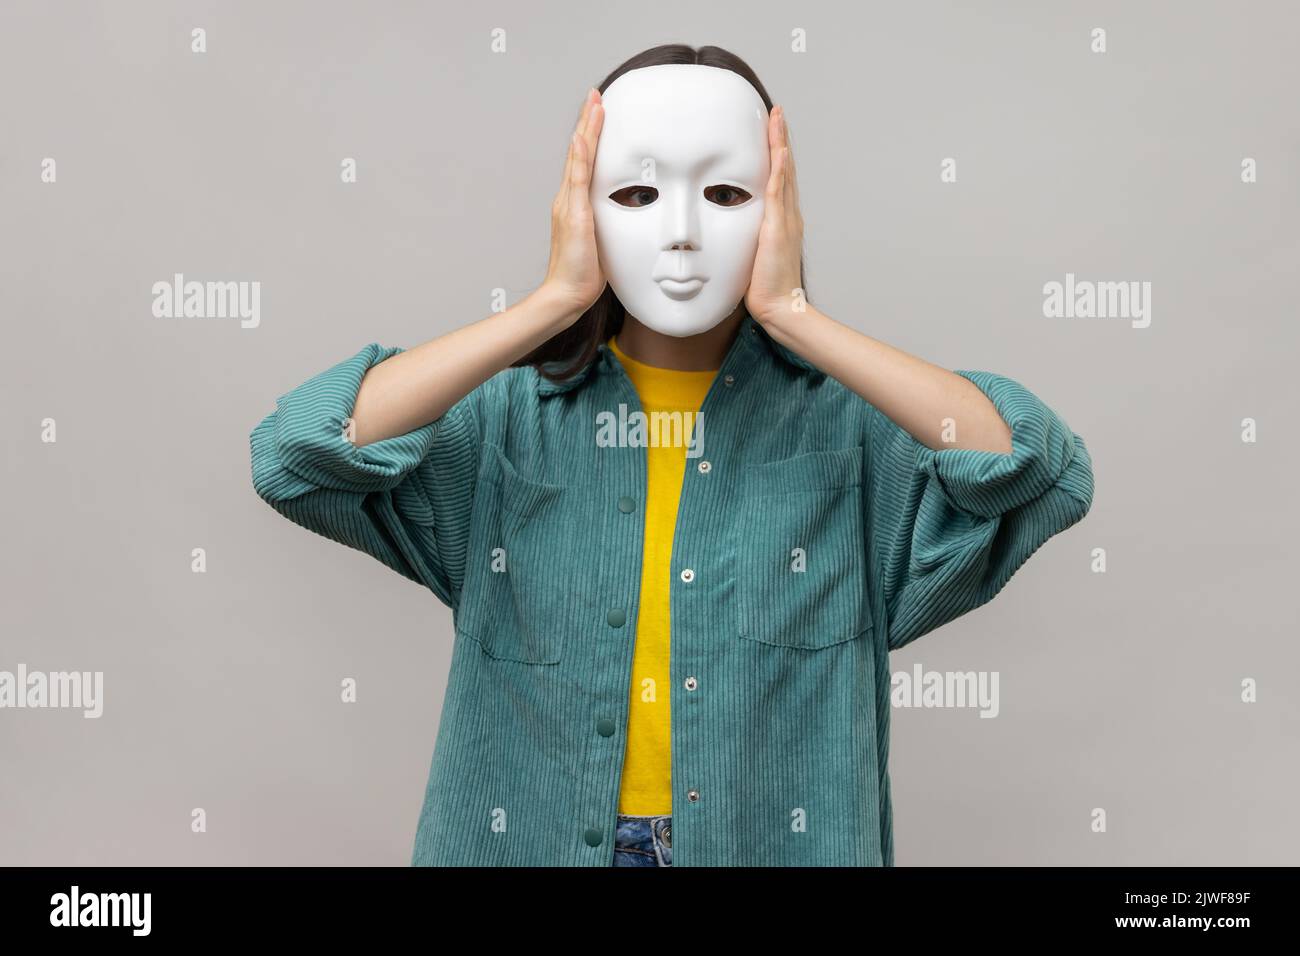 Porträt einer unbekannten Frau mit weißer Maske, stehend bedeckendes Gesicht, Multiple Persönlichkeitsstörung, tragen Jacke im lässigen Stil. Innenaufnahme des Studios isoliert auf grauem Hintergrund. Stockfoto